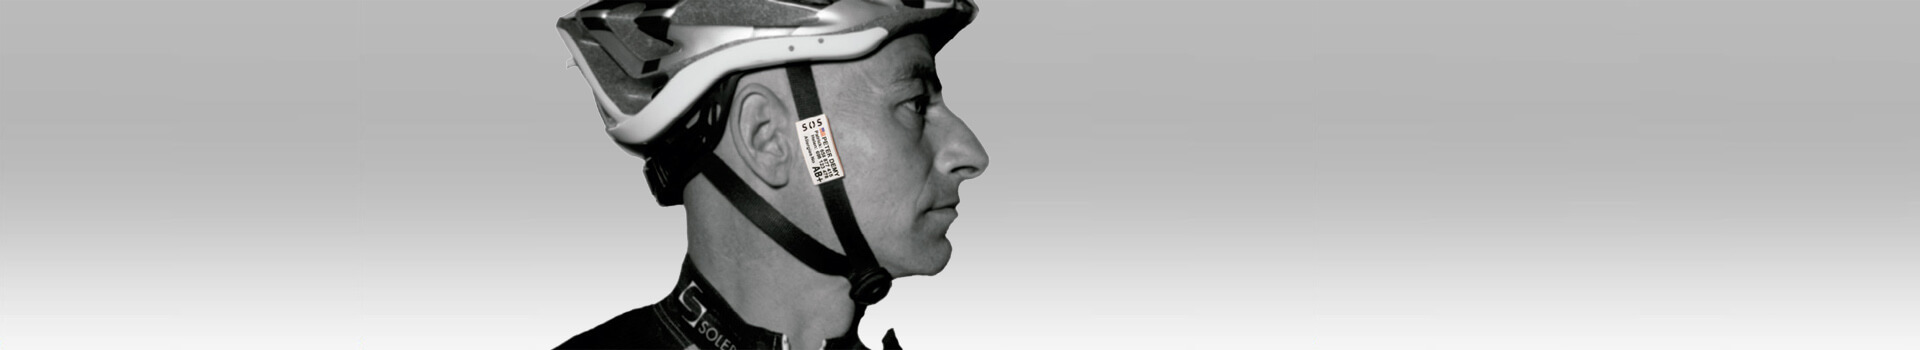 Plaque d'identification de sécurité pour cyclistes